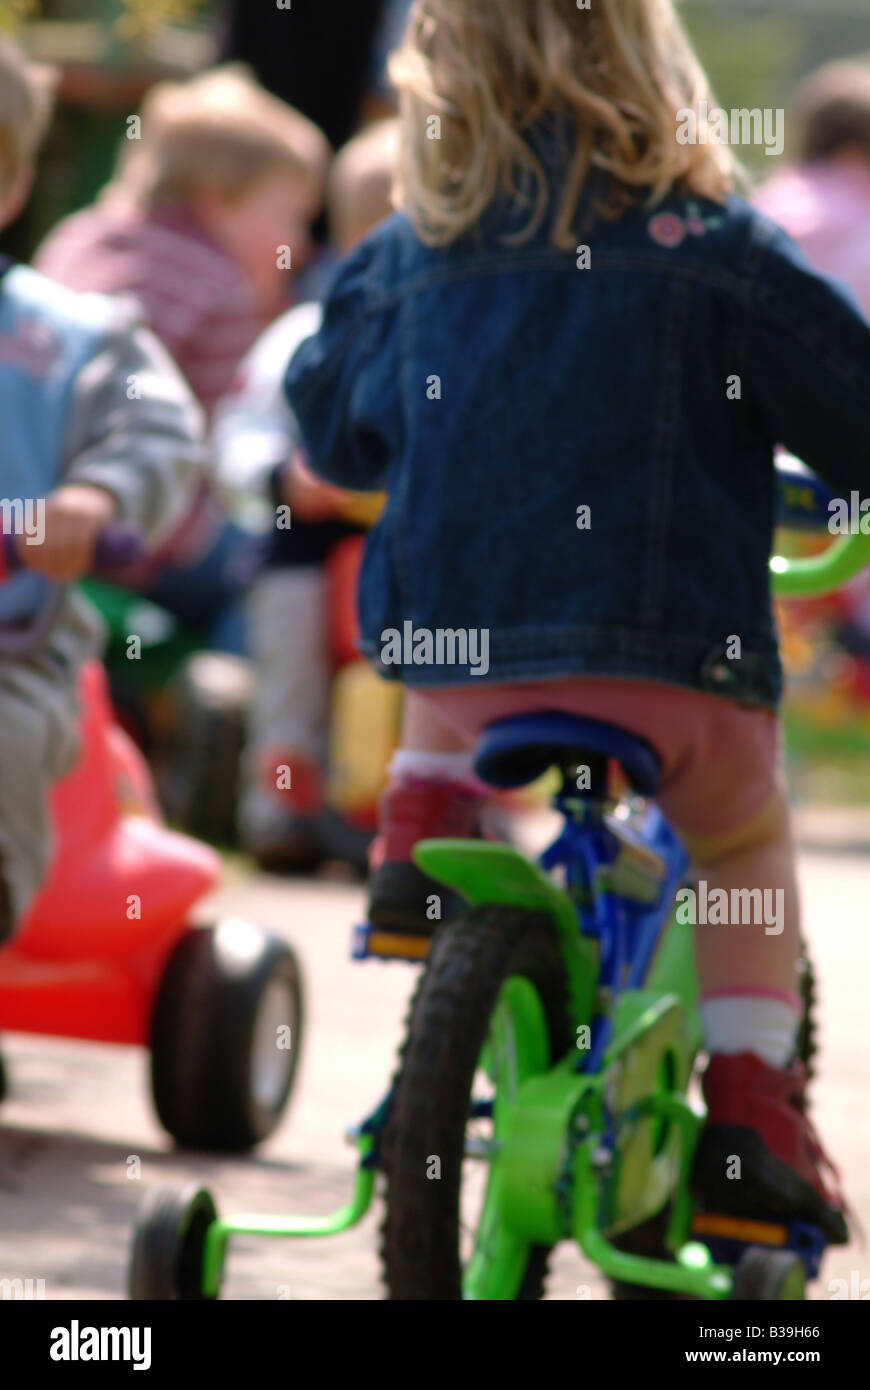 Nursery children riding on trikes and bikes Stock Photo